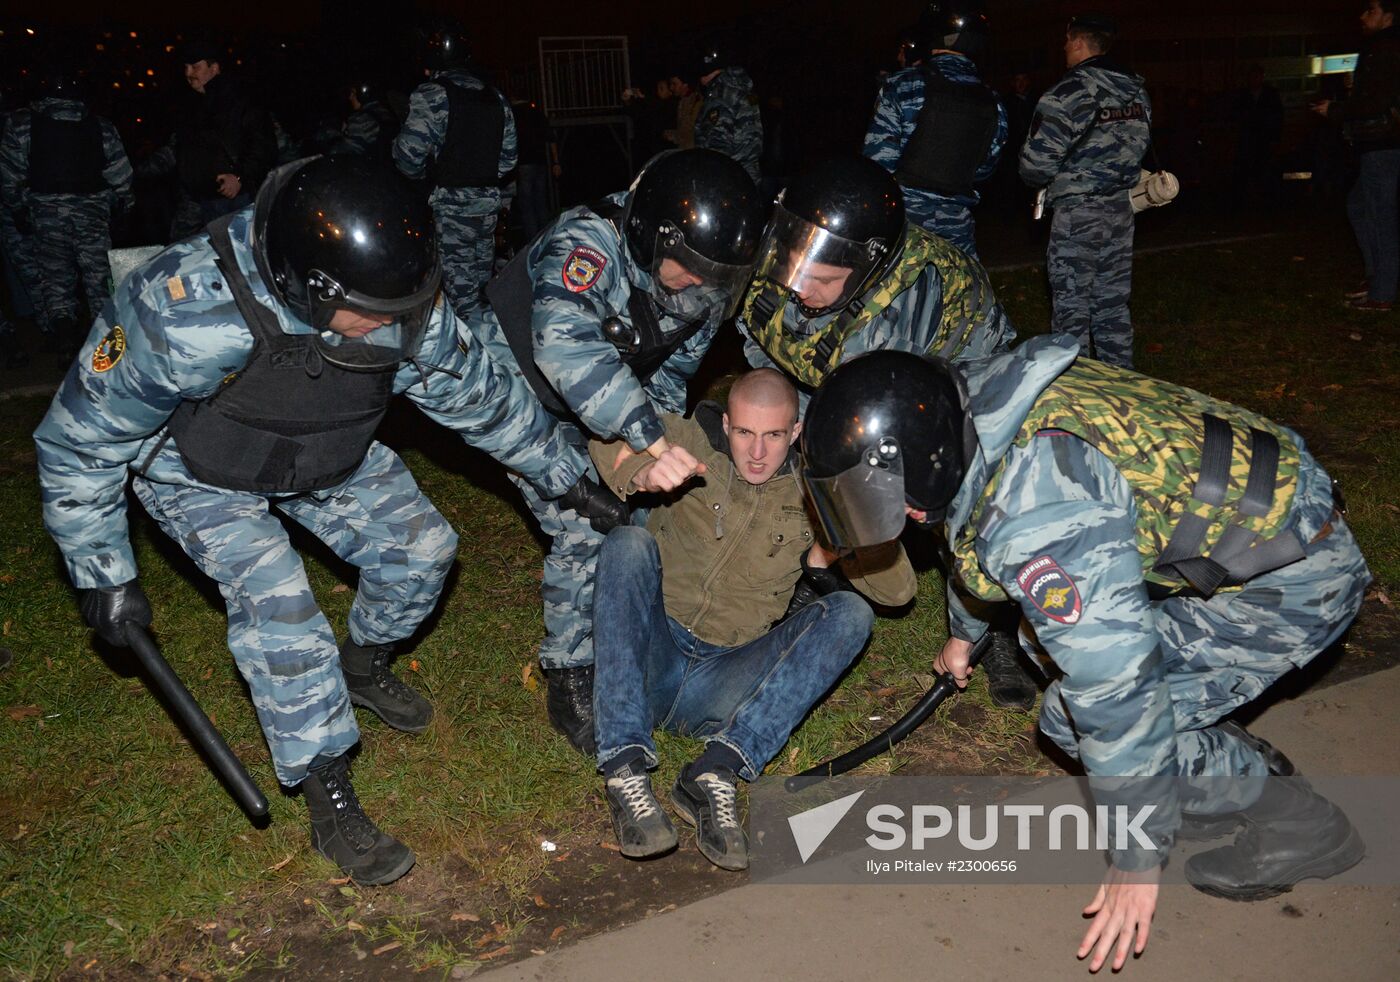 Mass disturbances in Moscow's Biryulevo district